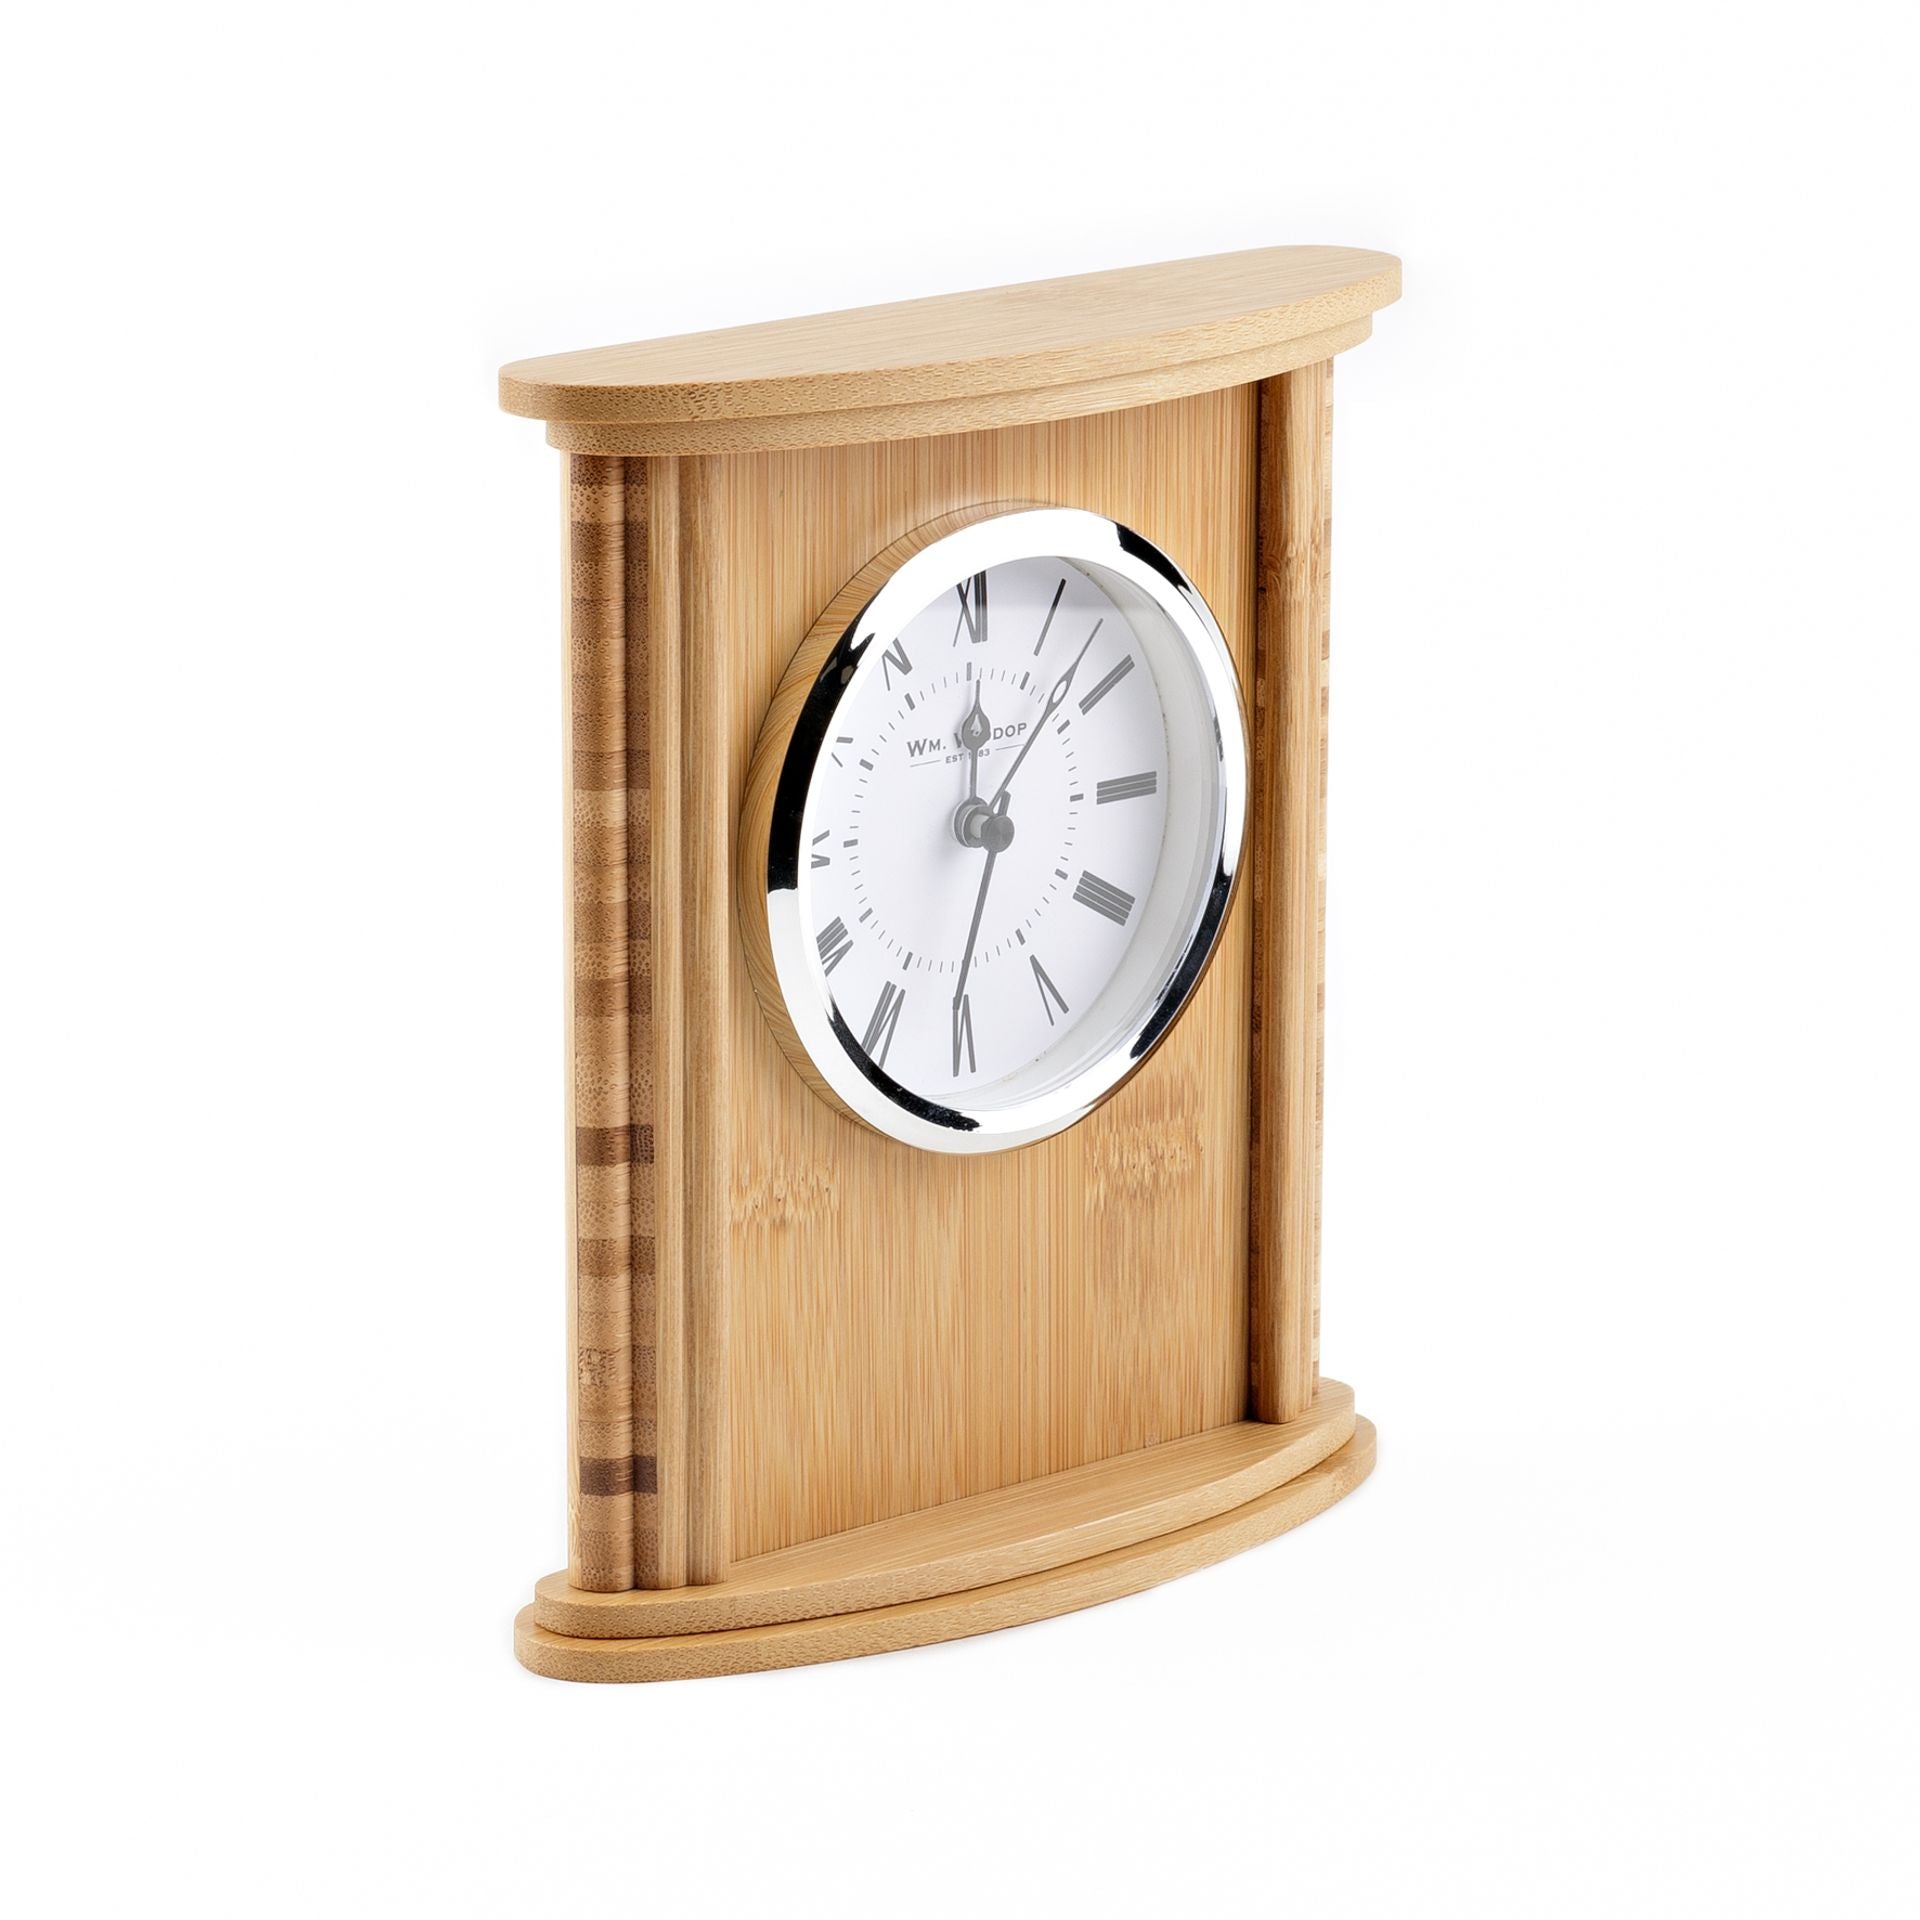 WM. Widdop Bamboo Wooden Curved Rectangular Mantel Clock